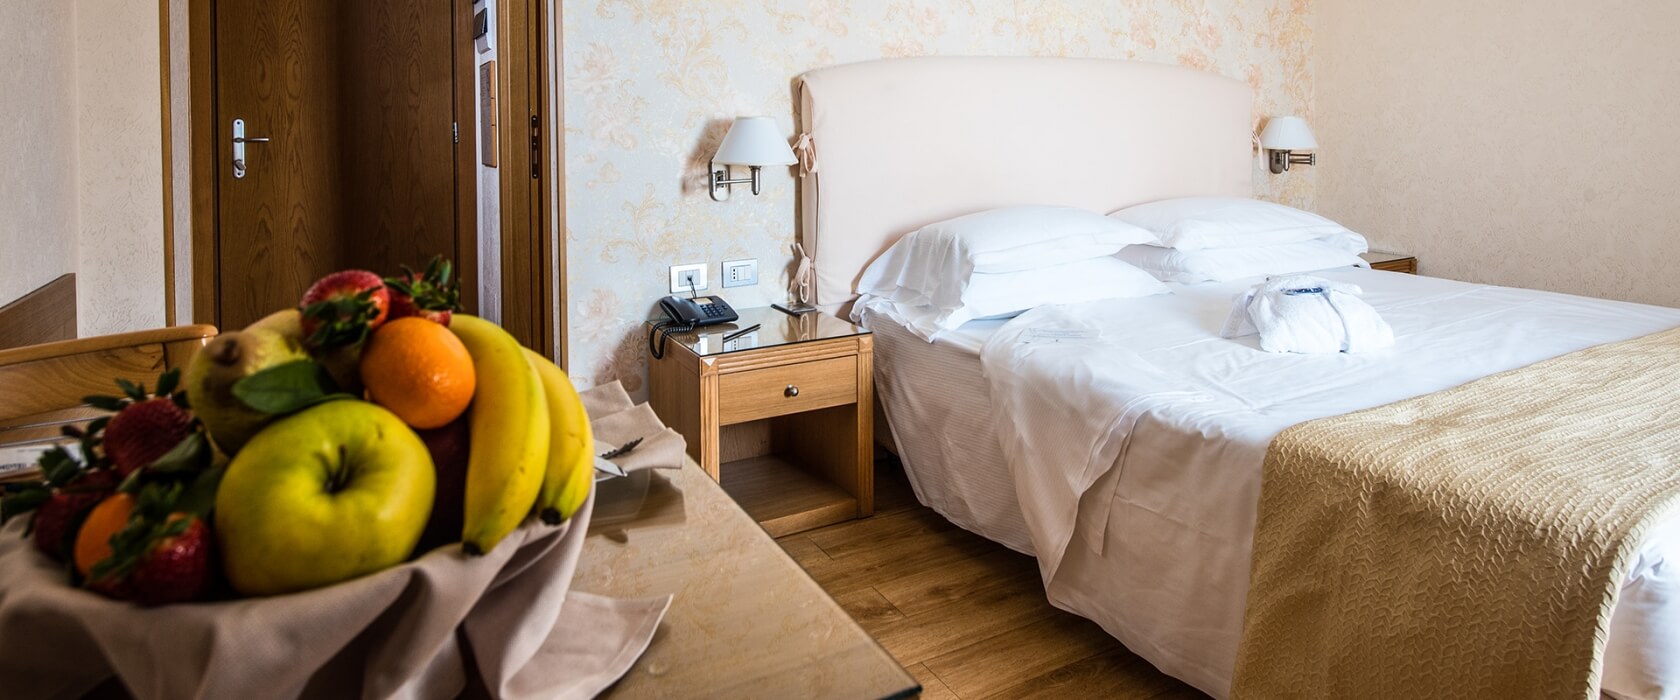 Prenota le nostre camere family: Hotel Touring ti aspetta a Carpi